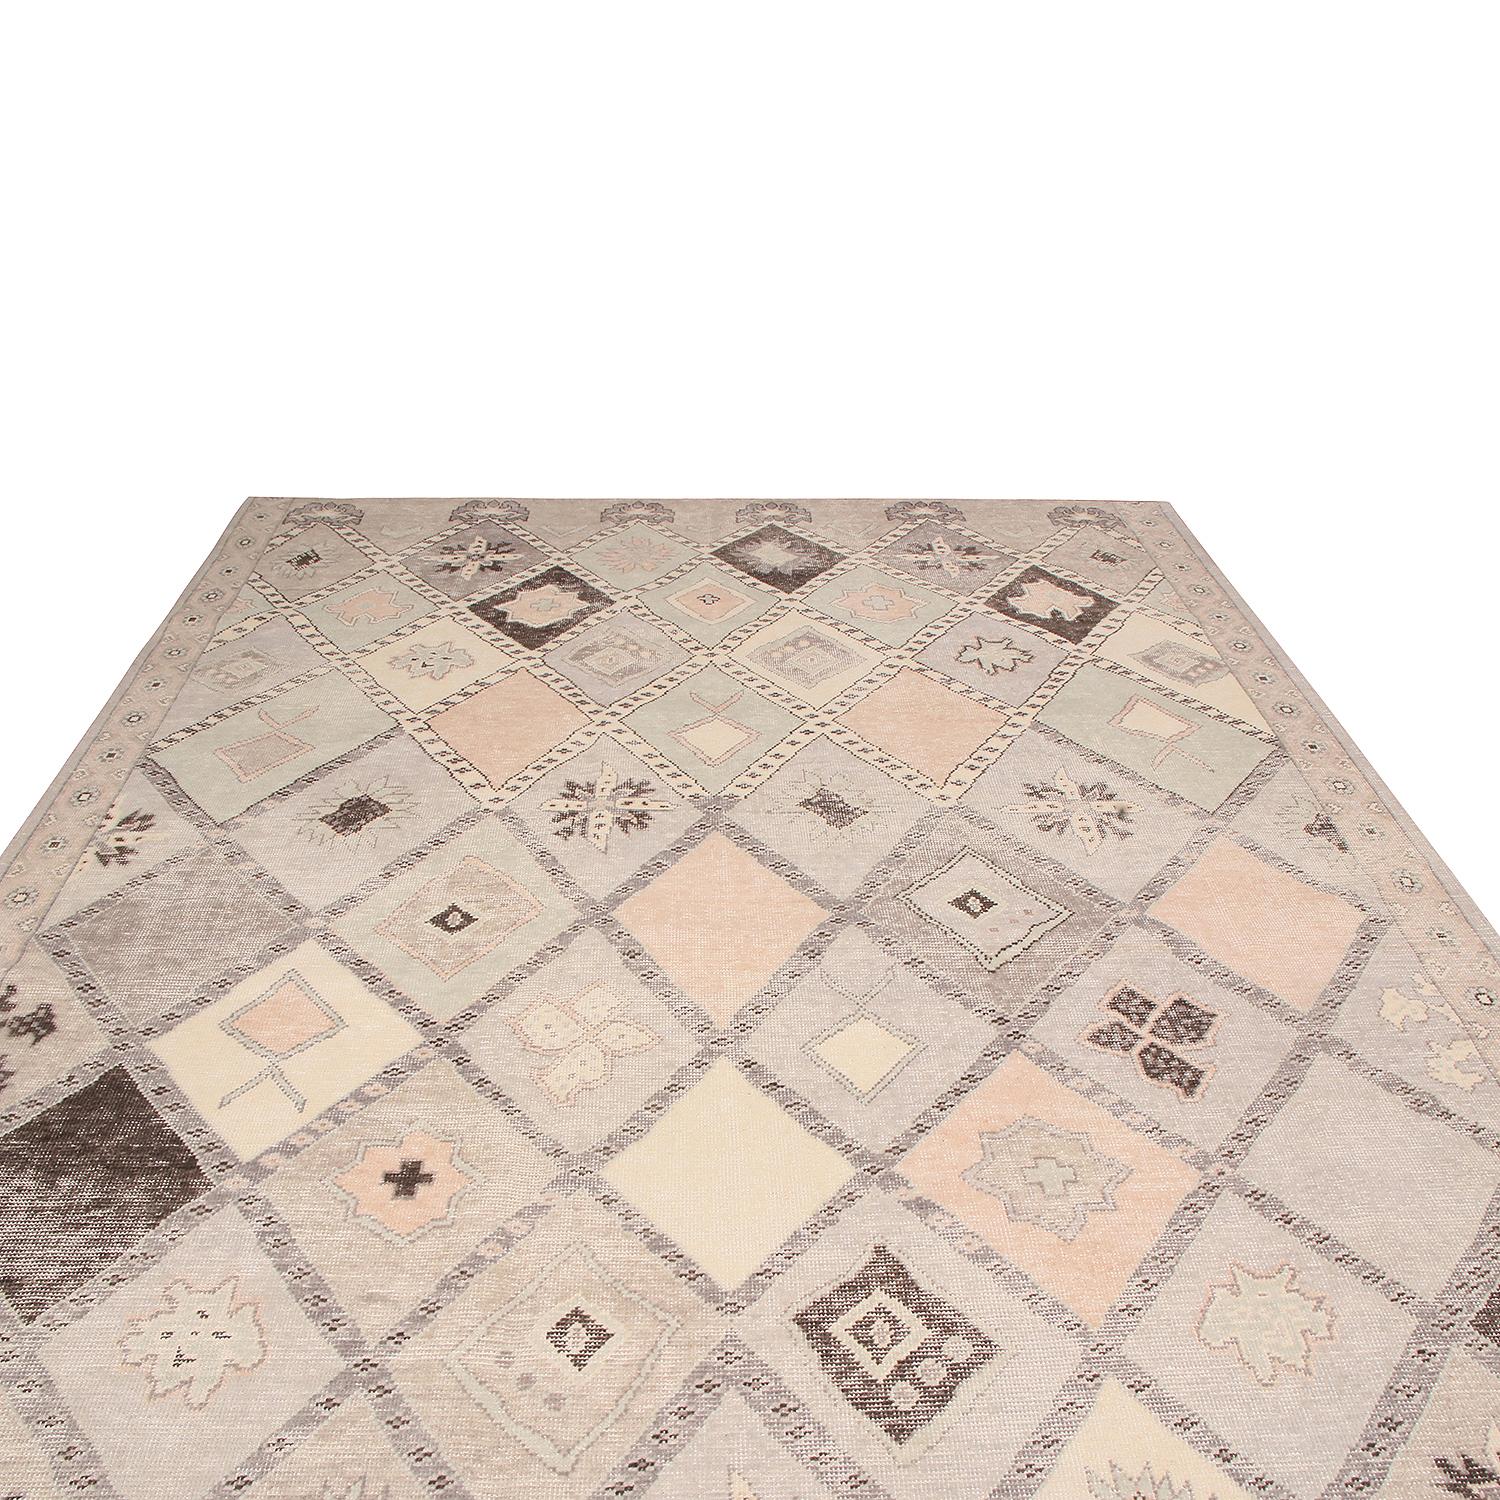 Dieser geometrisch-florale Teppich aus hochwertiger, handgeknüpfter Wolle aus Indien ist die jüngste Ergänzung der Homage-Kollektion von Rug & Kilim, die mit weniger Knoten pro Quadratzoll die Ästhetik des Shabby-Chic aufgreift. Das Rautenfeldmuster